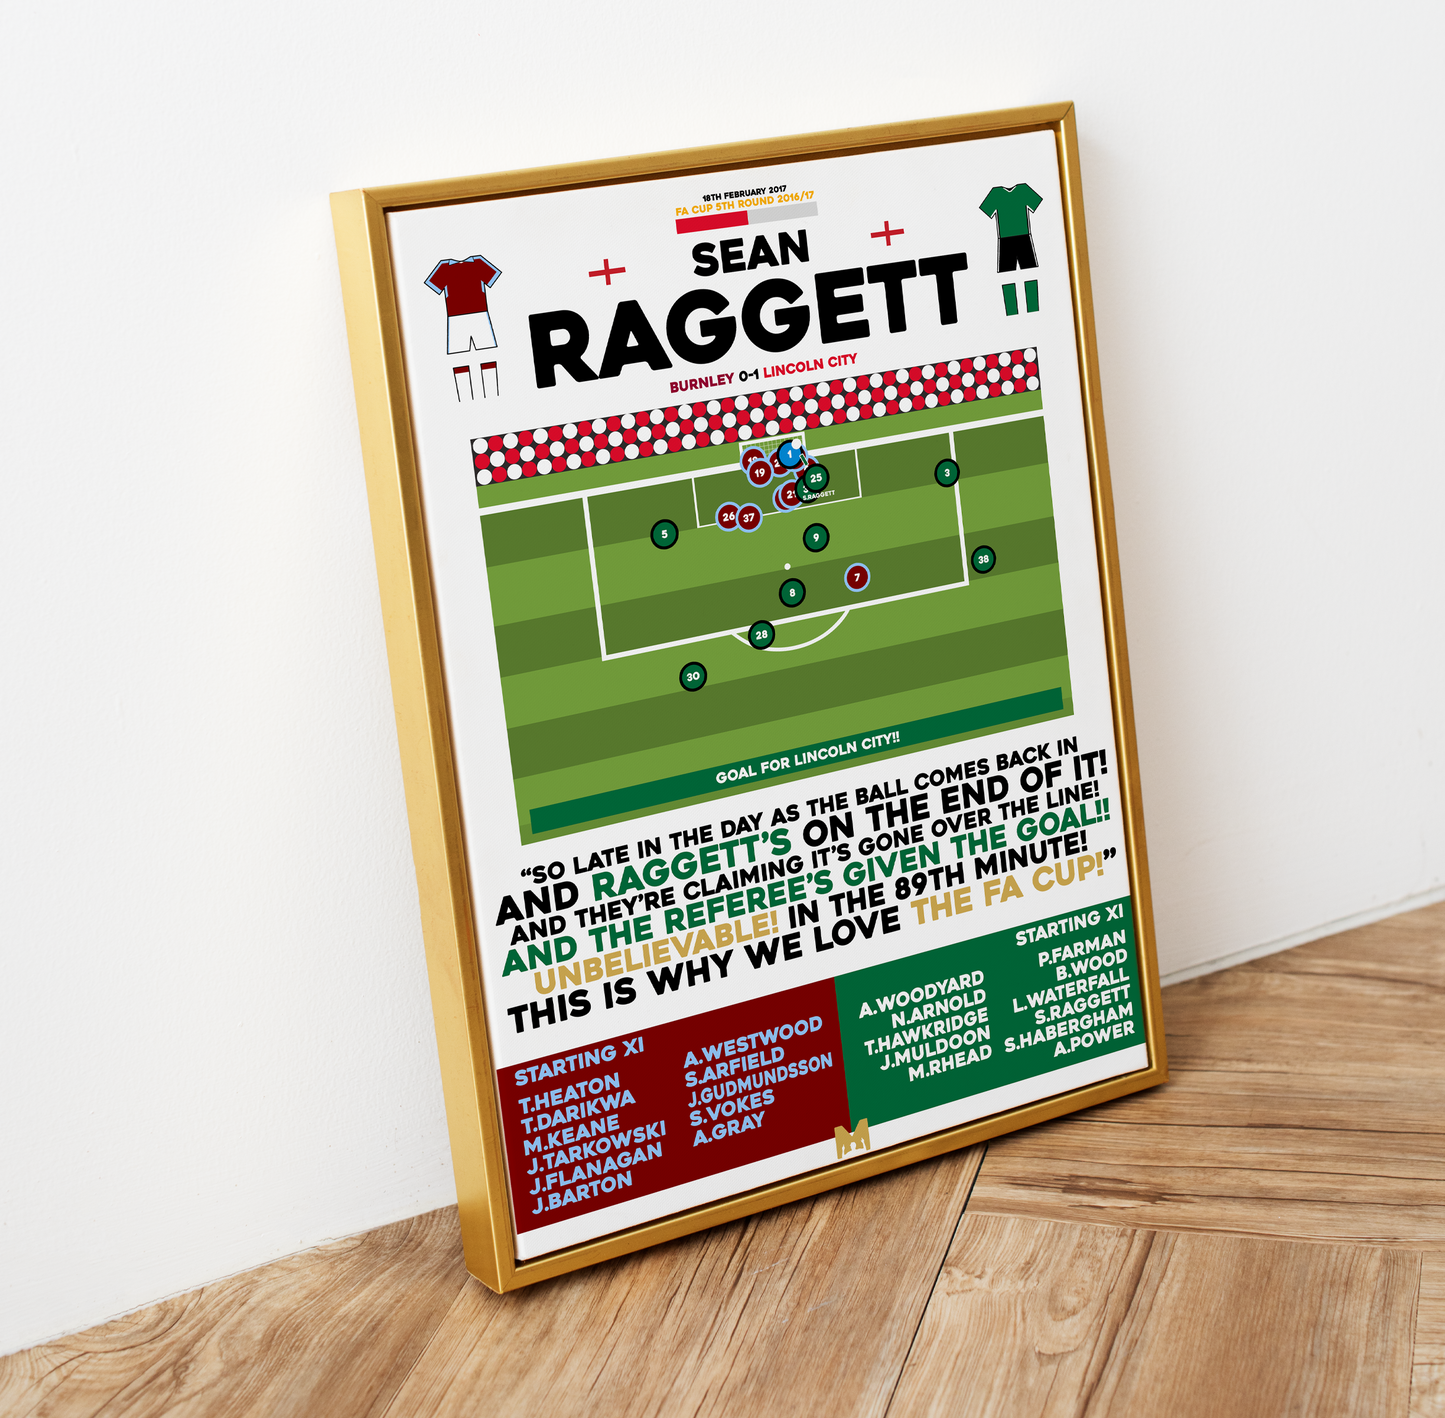 Sean Raggett Goal vs Burnley - FA Cup 2016/17 - Lincoln City